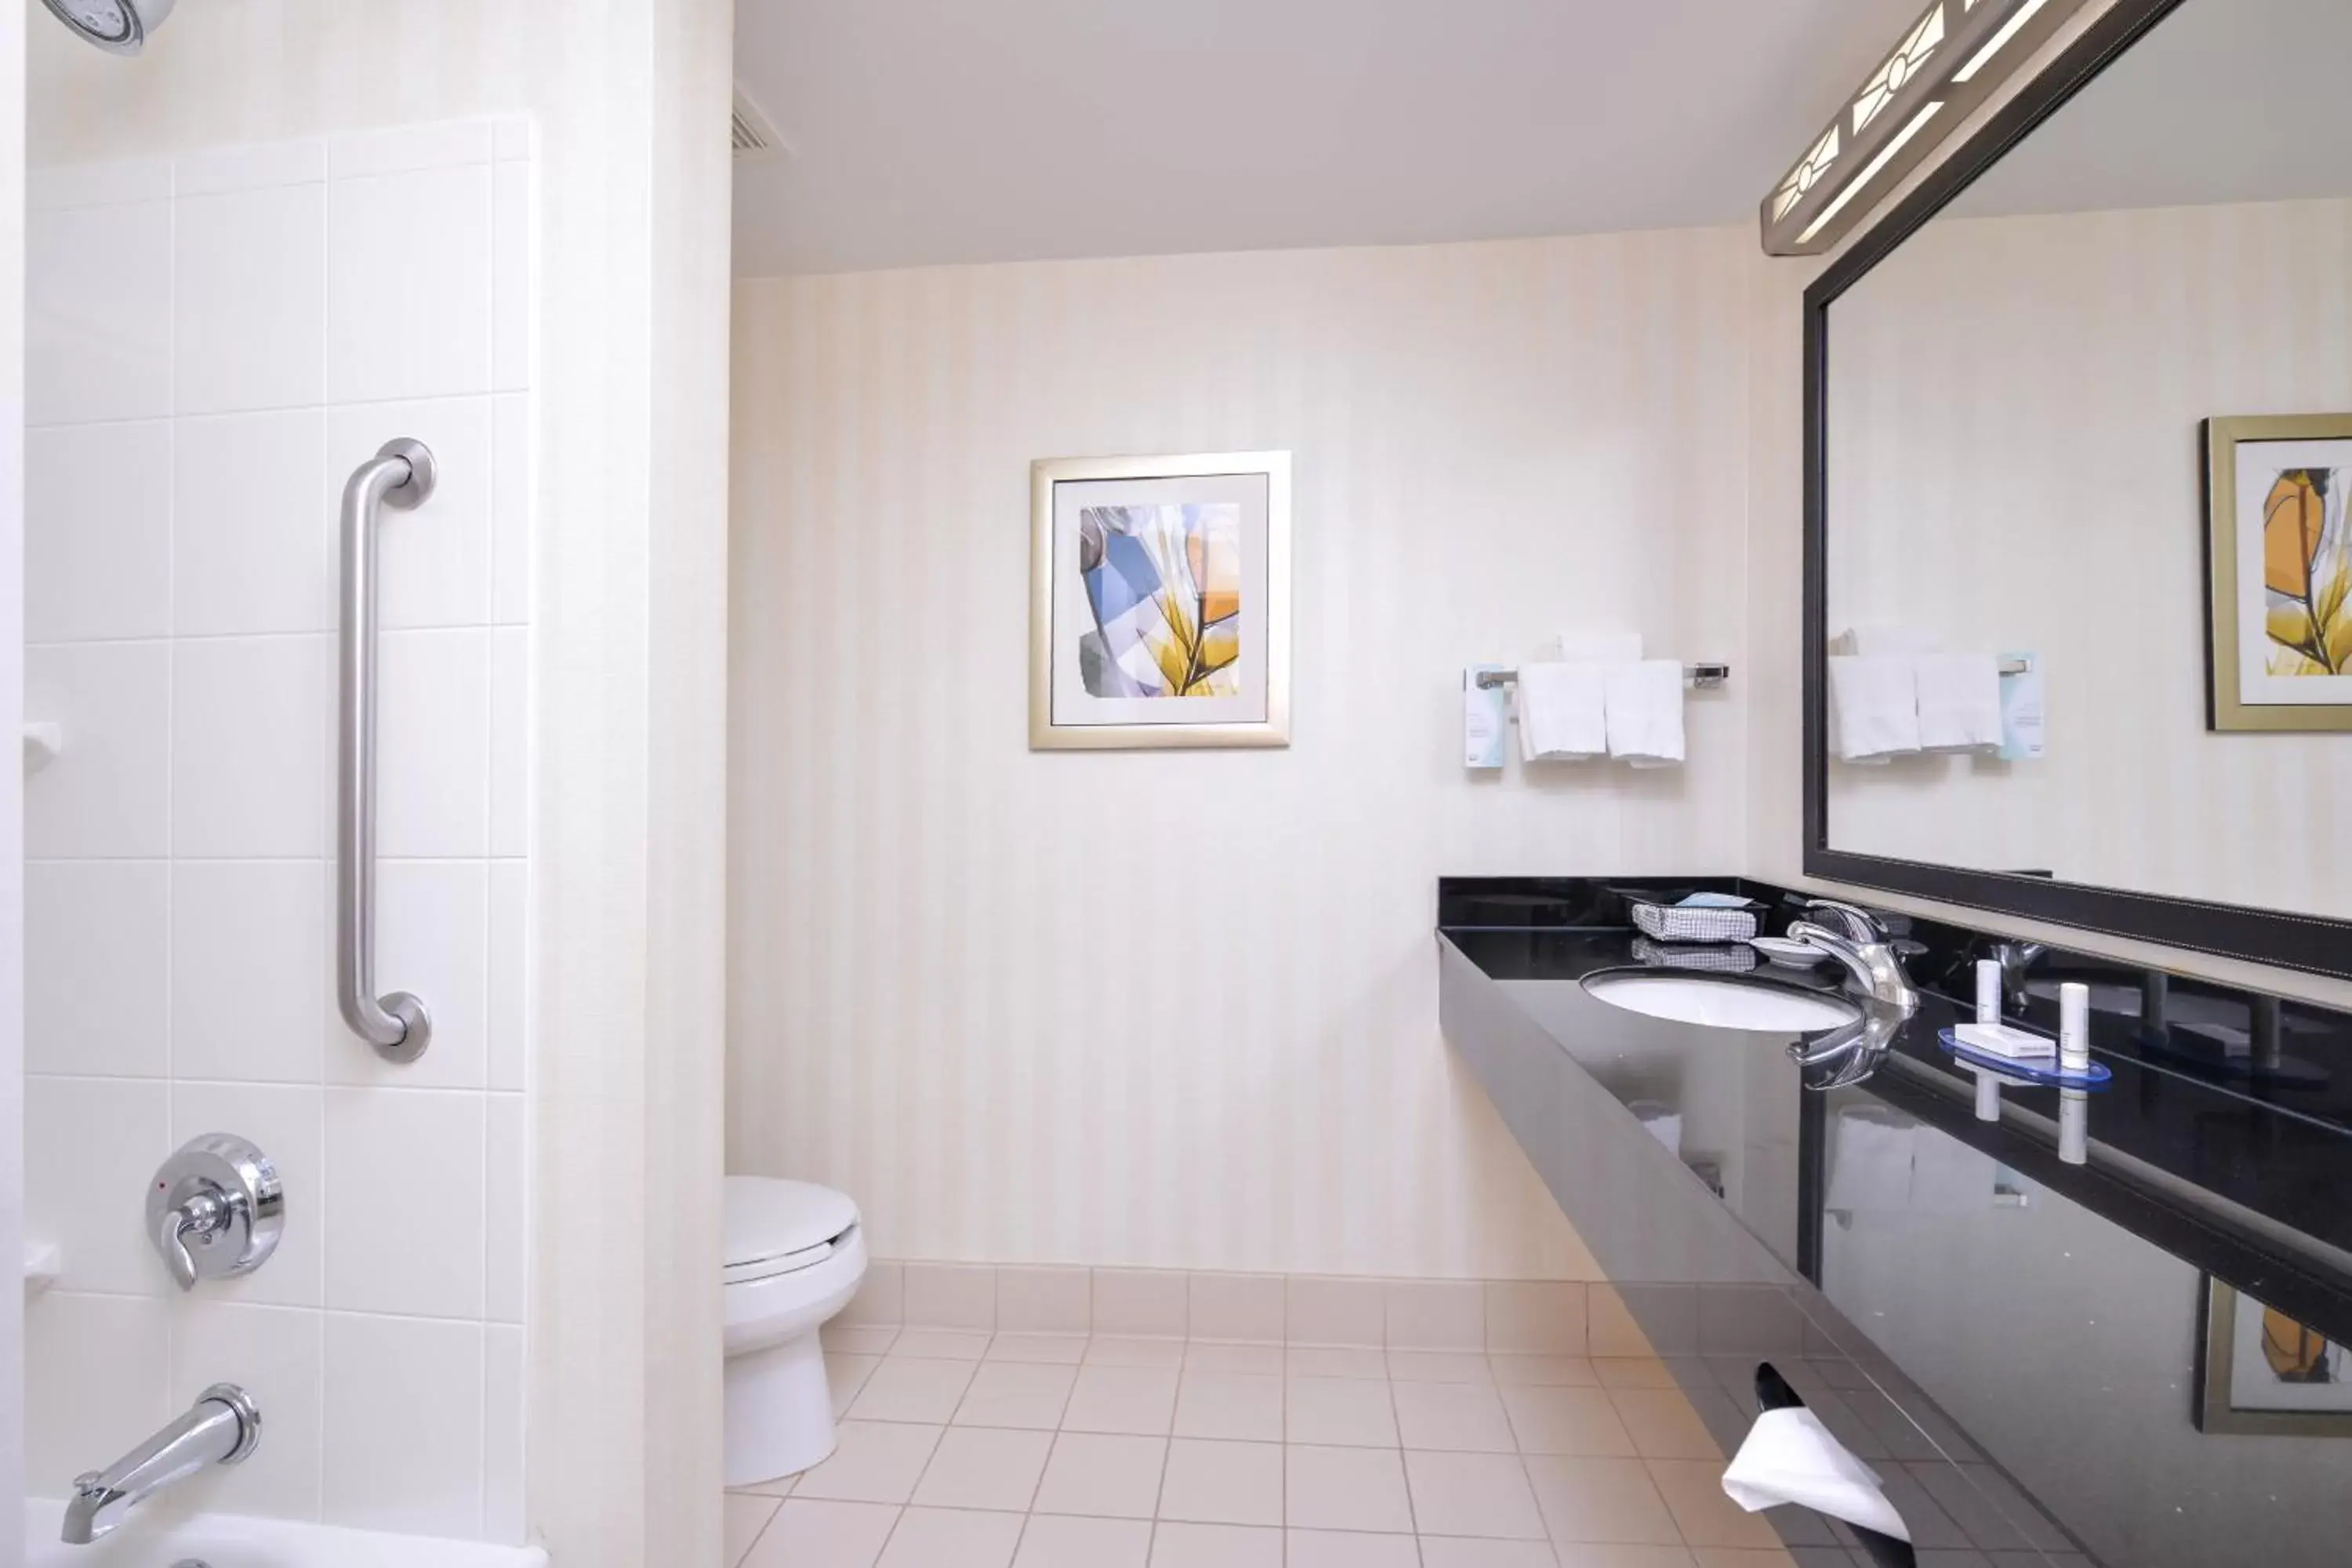 Bathroom in Fairfield Inn & Suites White Marsh